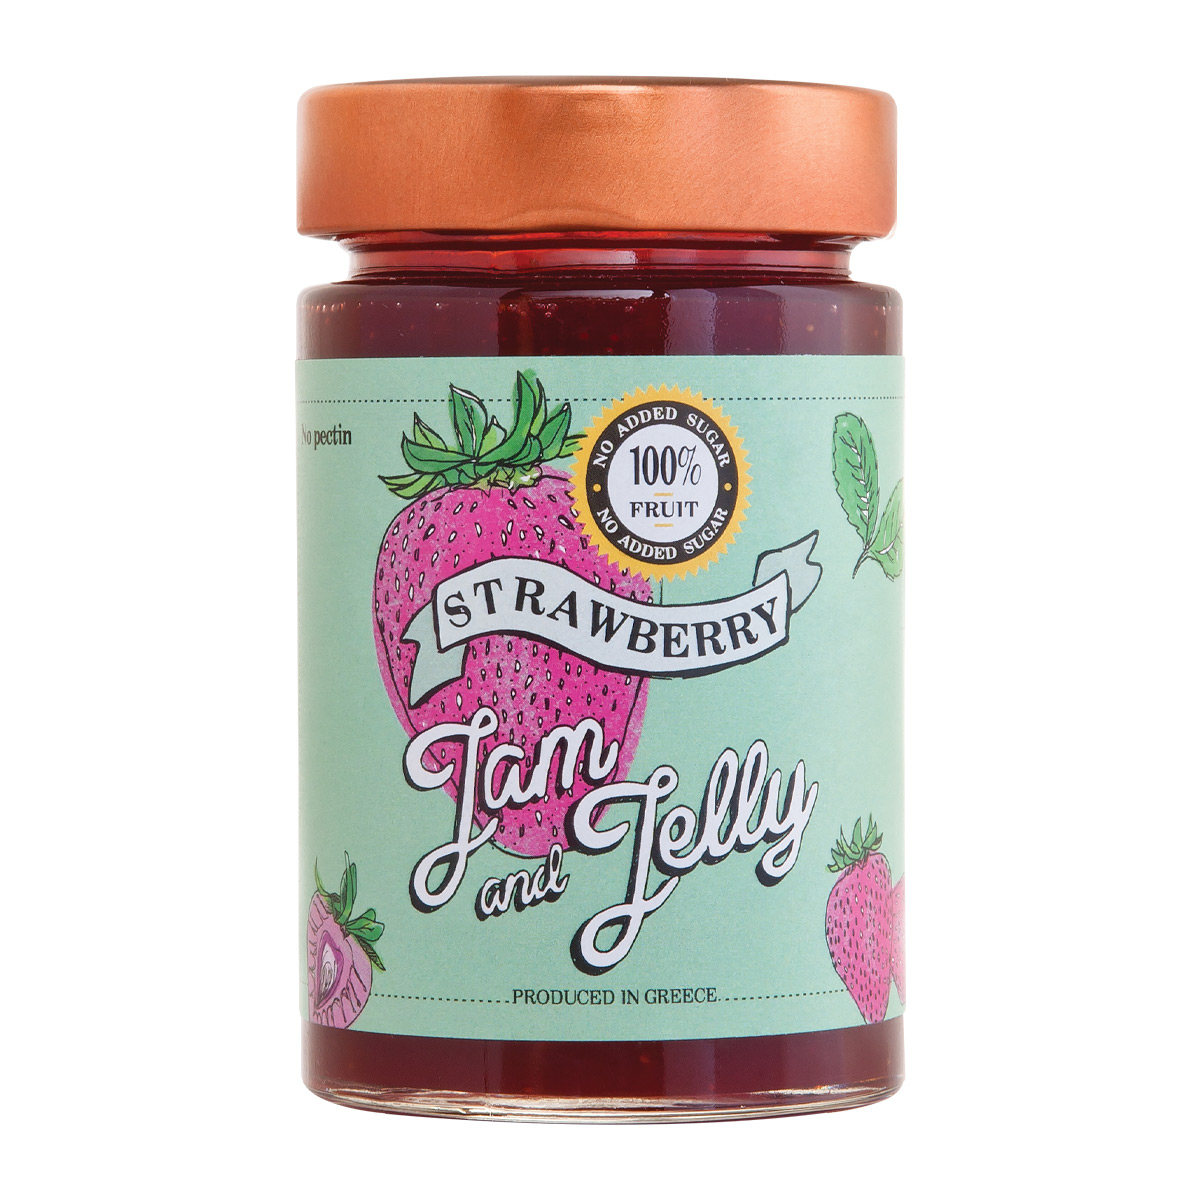 Джем клубничный без сахара. Jelly togella фото. Wholesale Jams and Jellies Arkansas. To spread with Strawberry Jam.